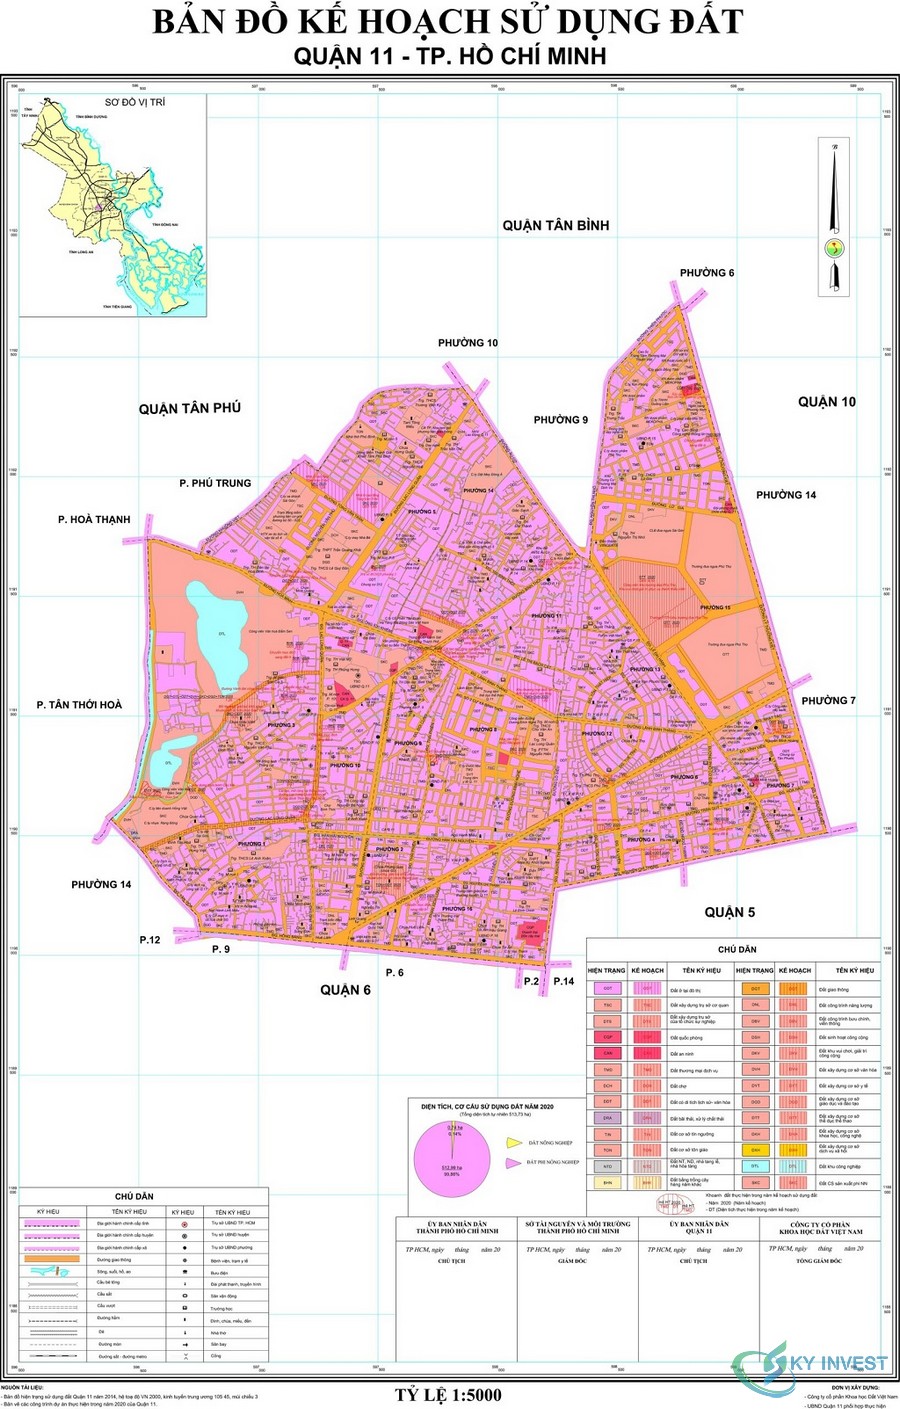 Bản đồ quy hoạch sử dụng đất quận 11